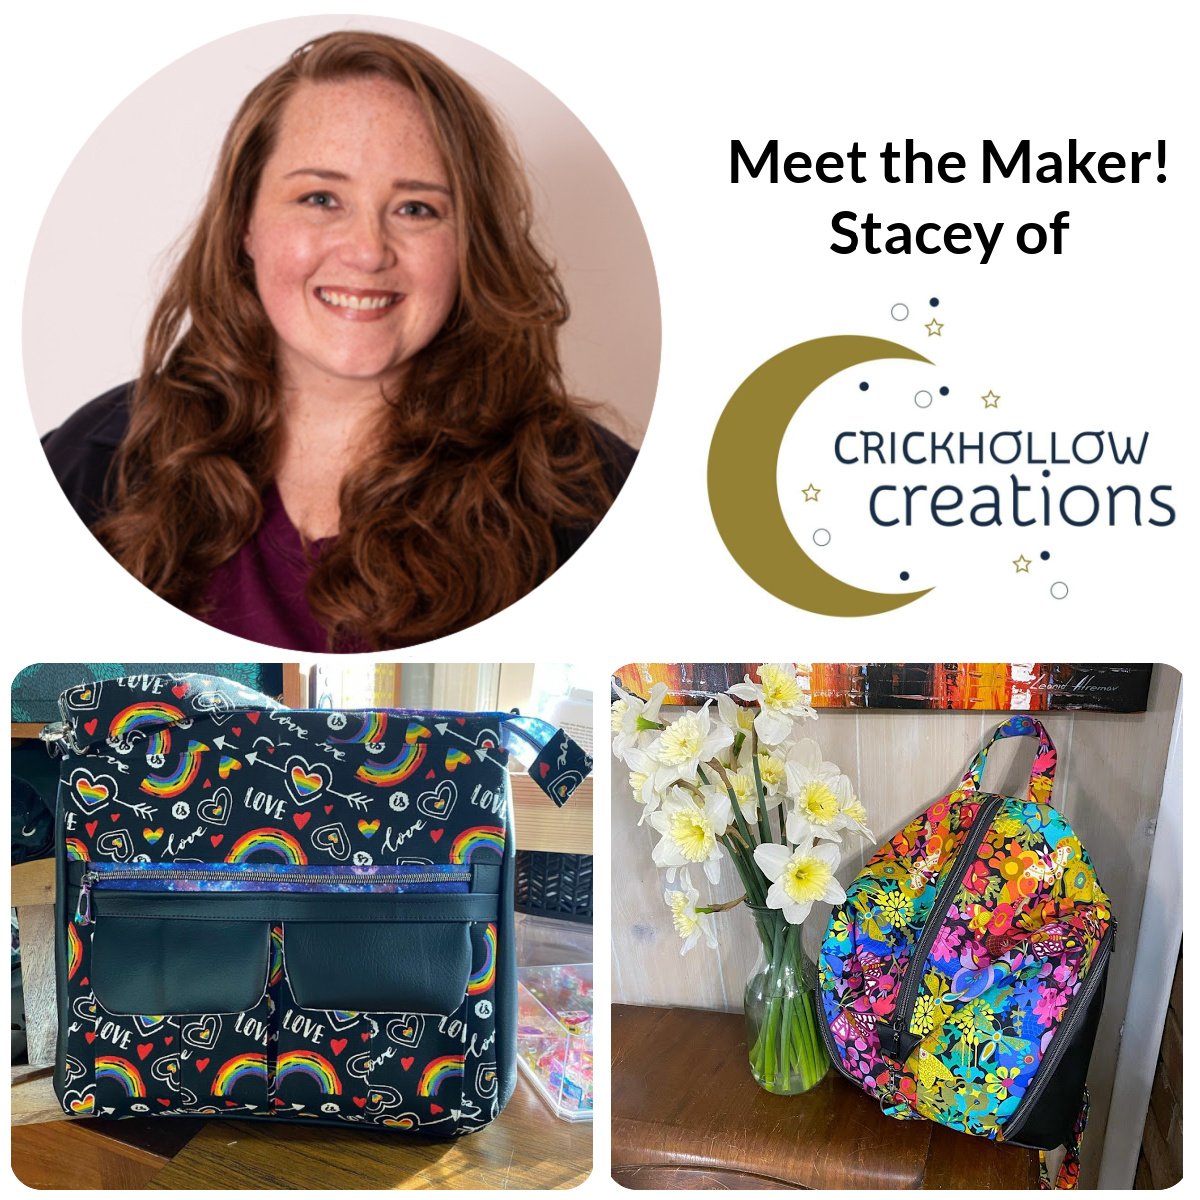 Meet the Maker - Stacey of Crickhollow Creations!